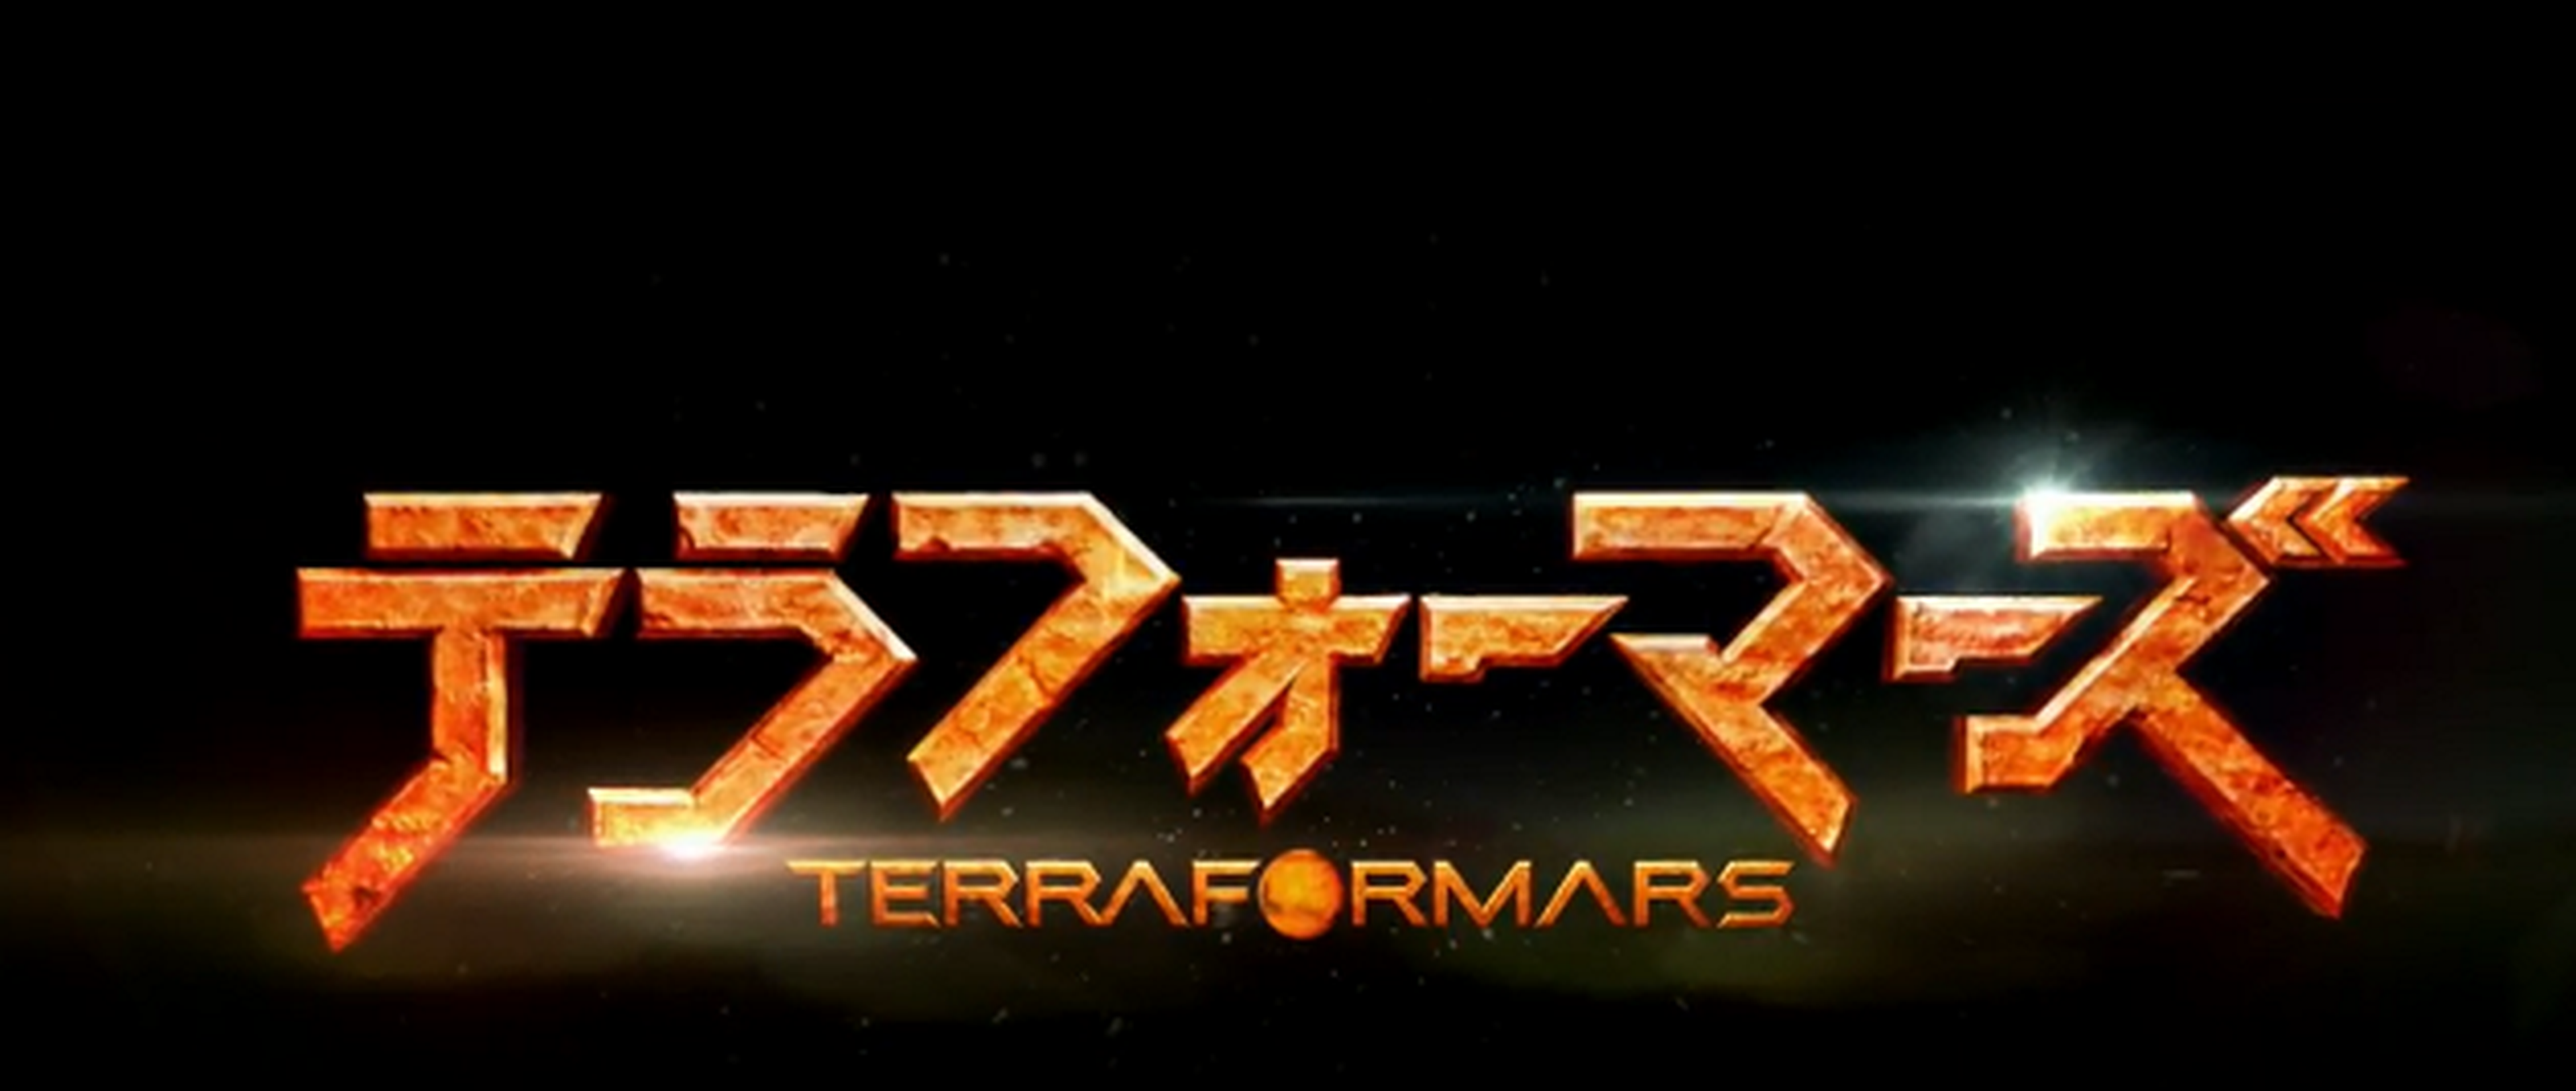 Trailer de Terra Formars en imagen real